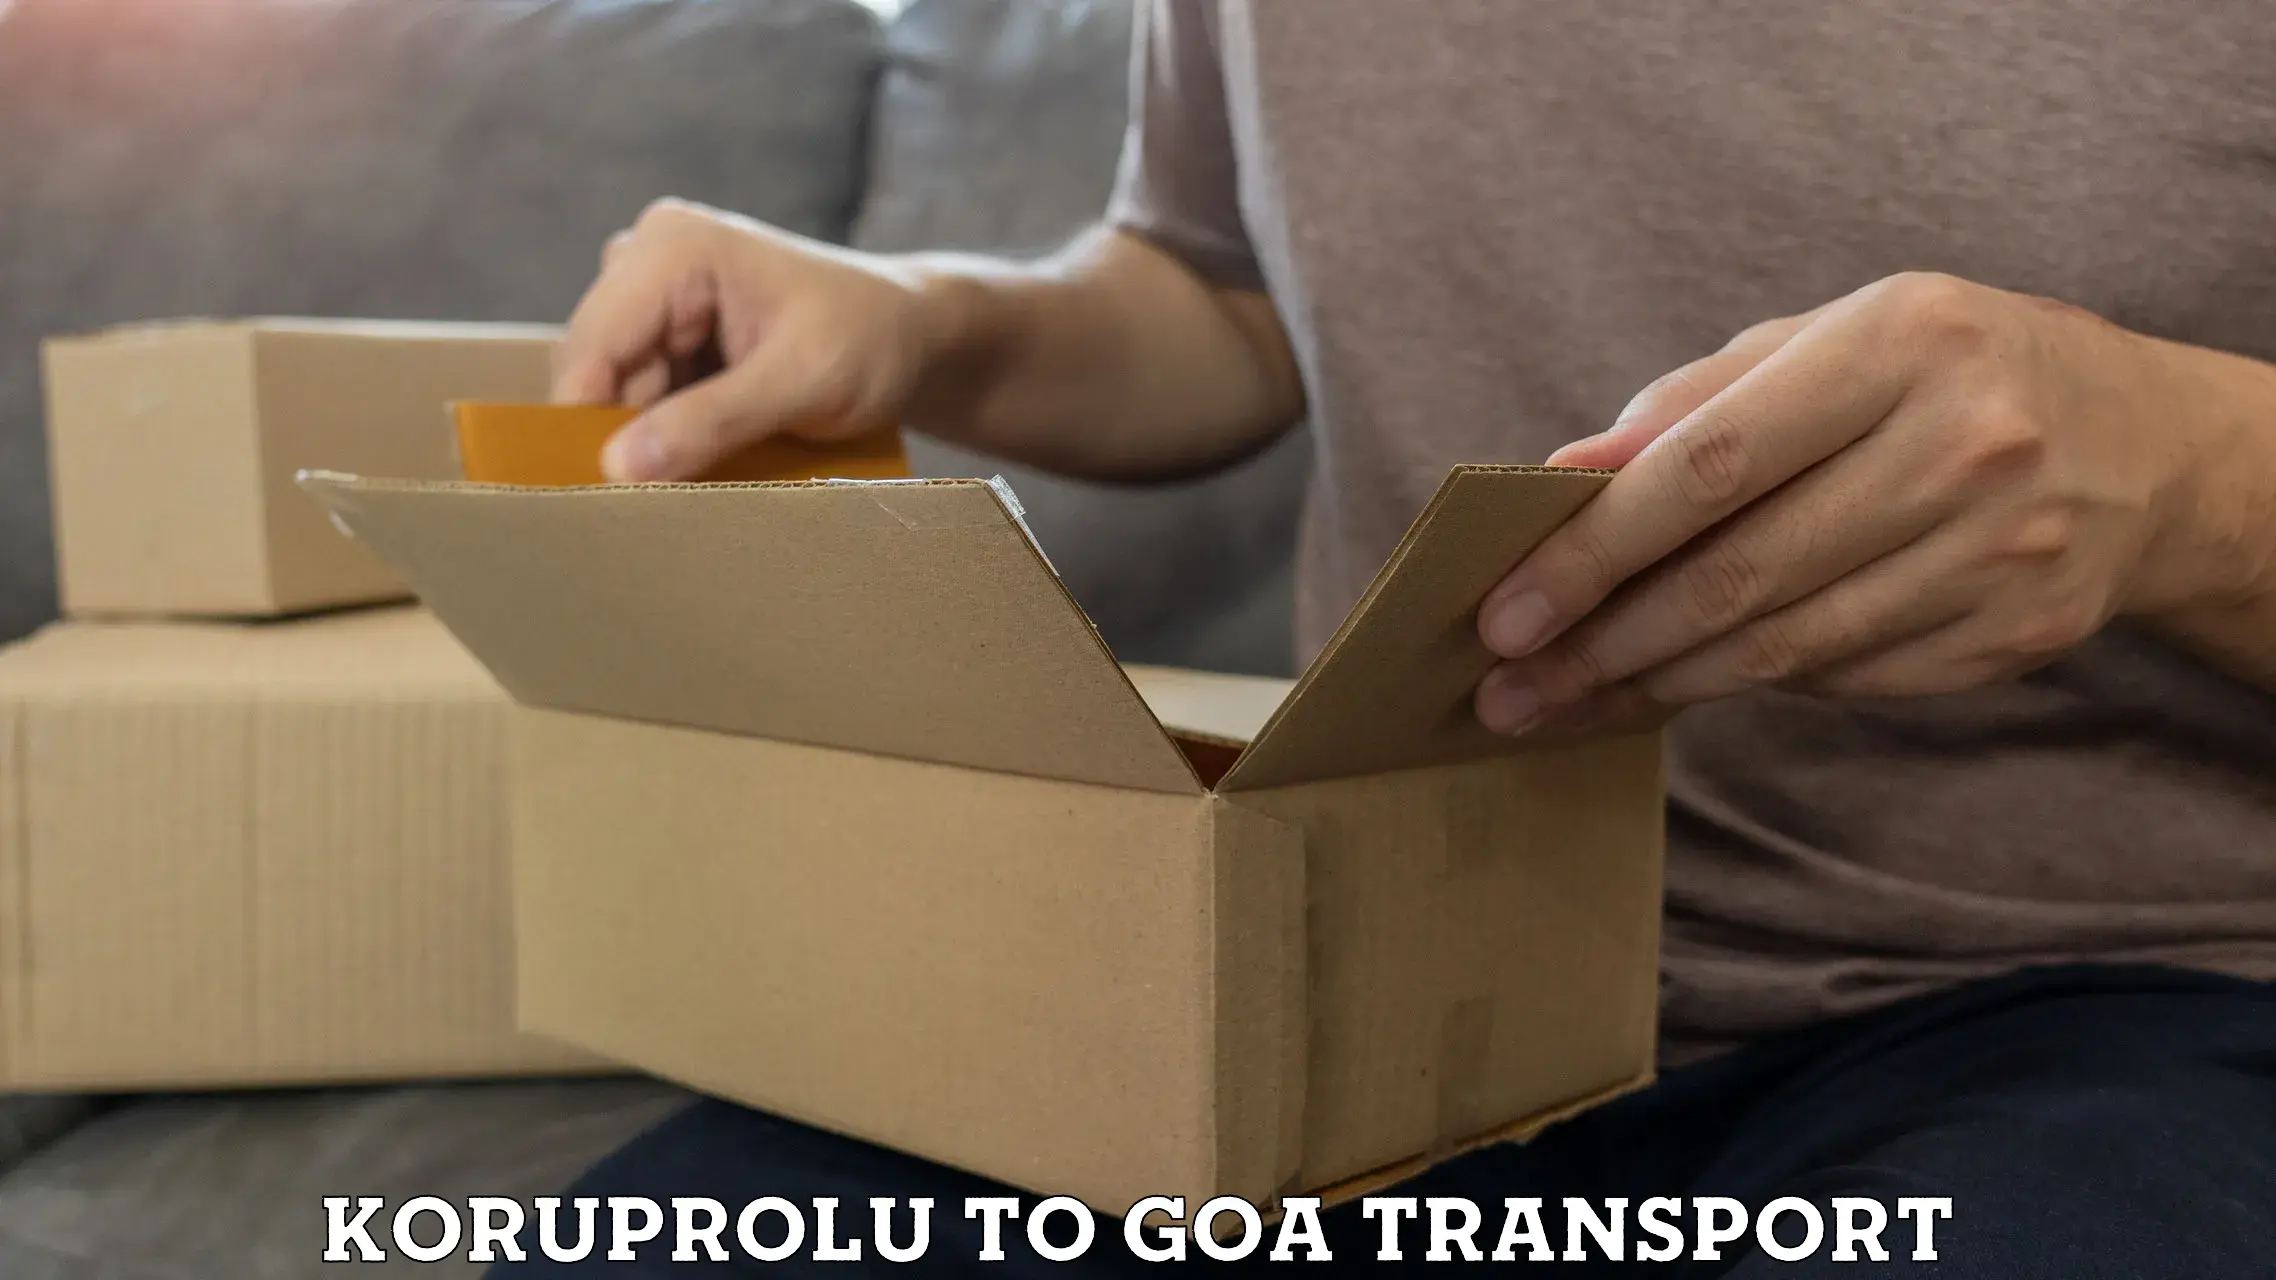 Domestic goods transportation services Koruprolu to Goa University